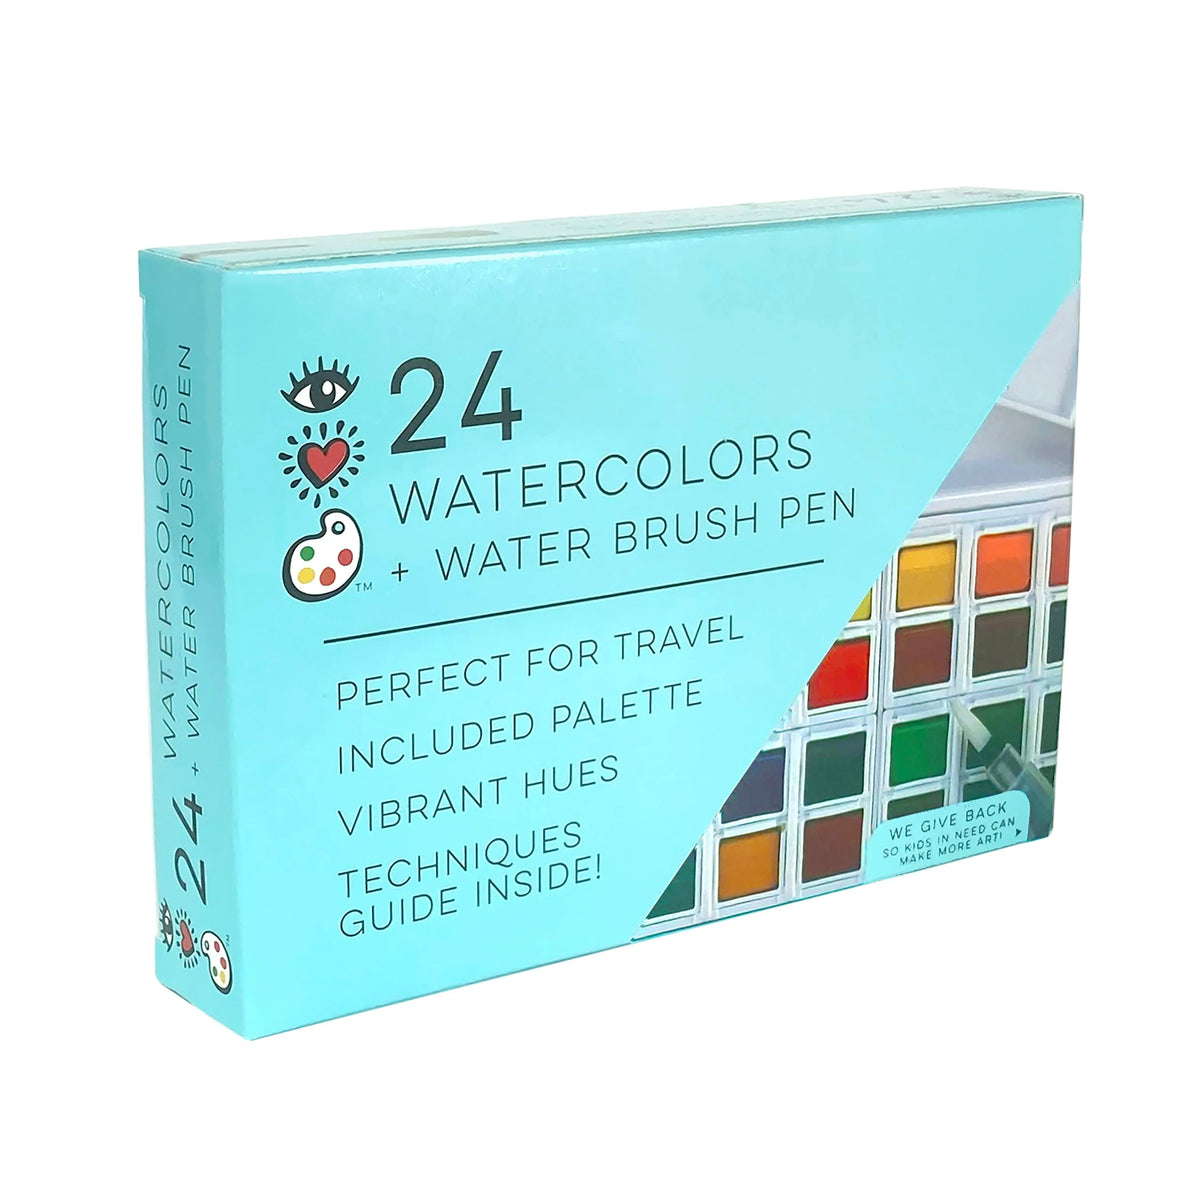 24 Watercolors and Water Brush Pens